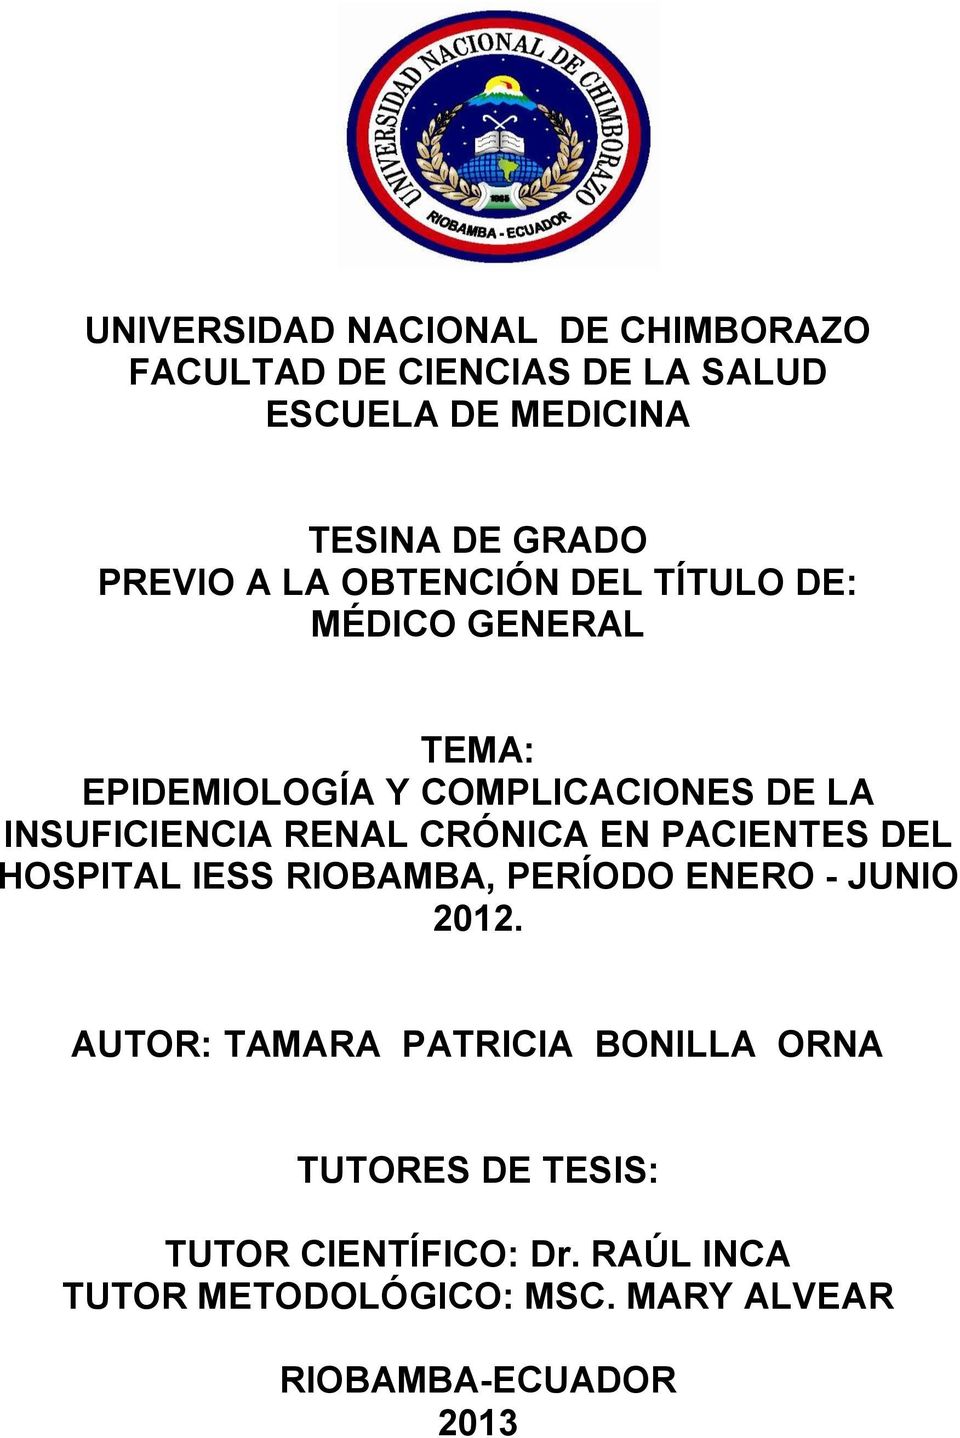 RENAL CRÓNICA EN PACIENTES DEL HOSPITAL IESS RIOBAMBA, PERÍODO ENERO - JUNIO 2012.